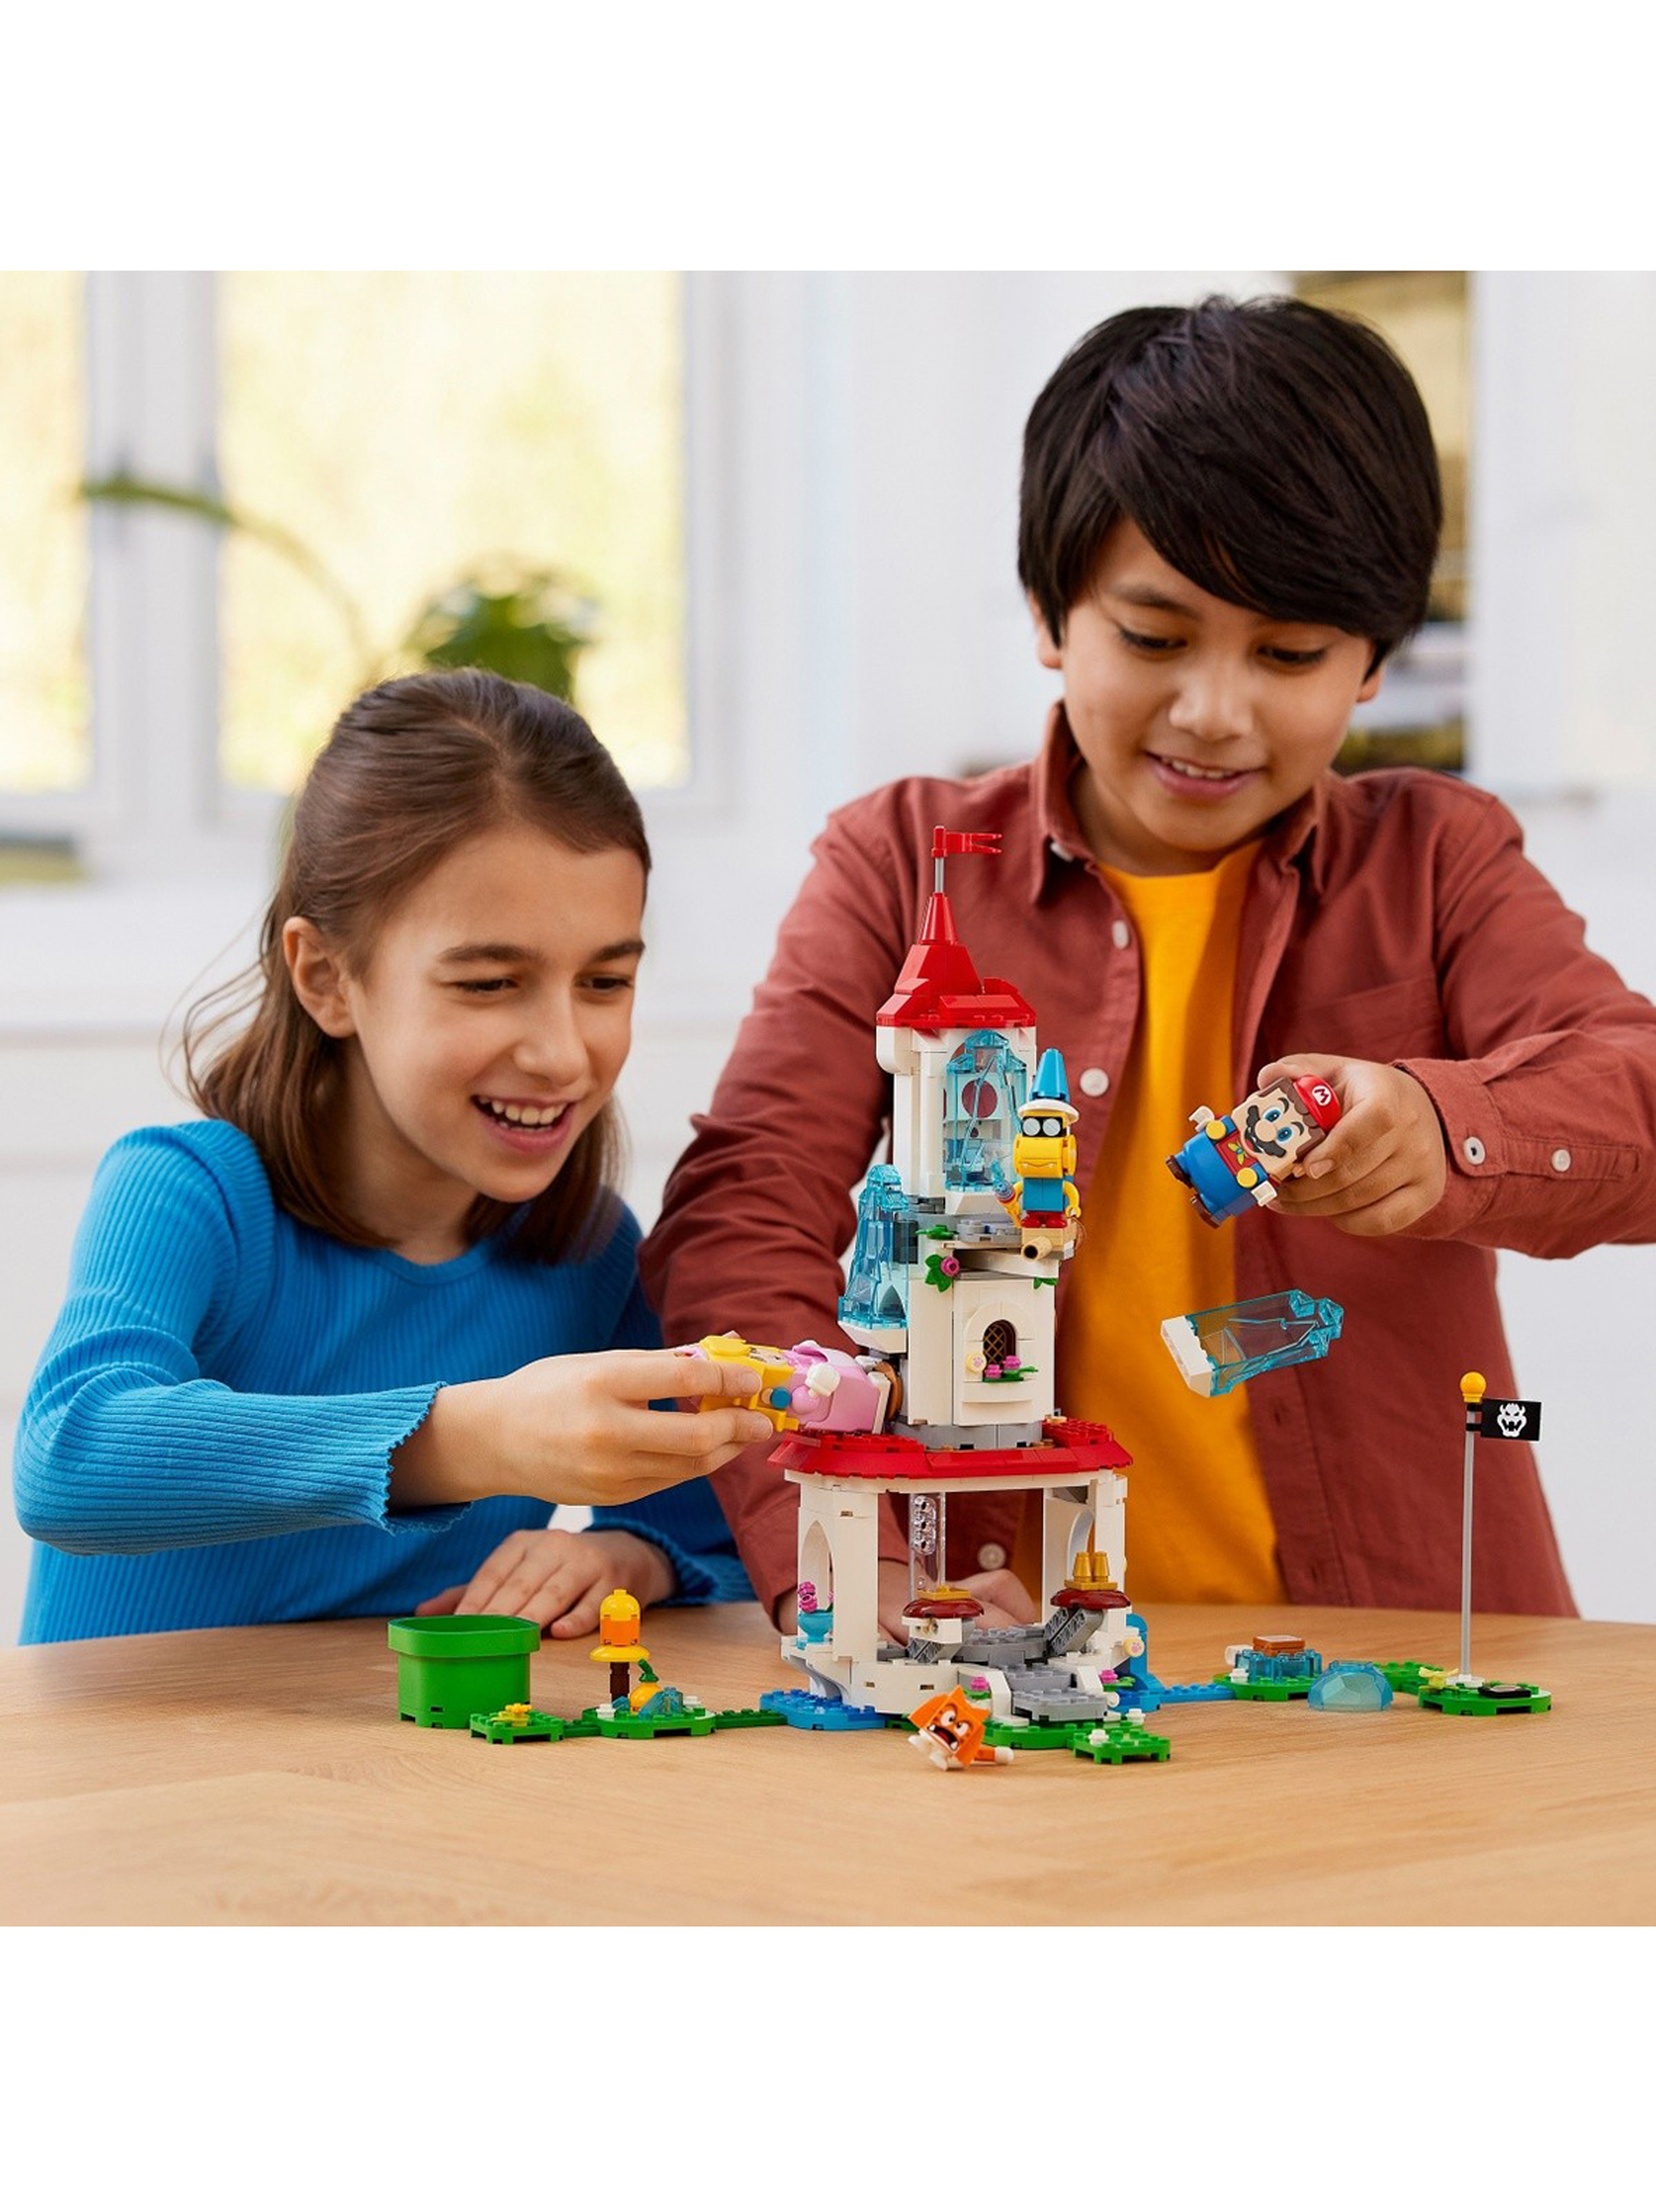 LEGO Super Mario - Cat Peach i lodowa wieża zestaw rozszerzający 71407 - 494 elementów, wiek 7+